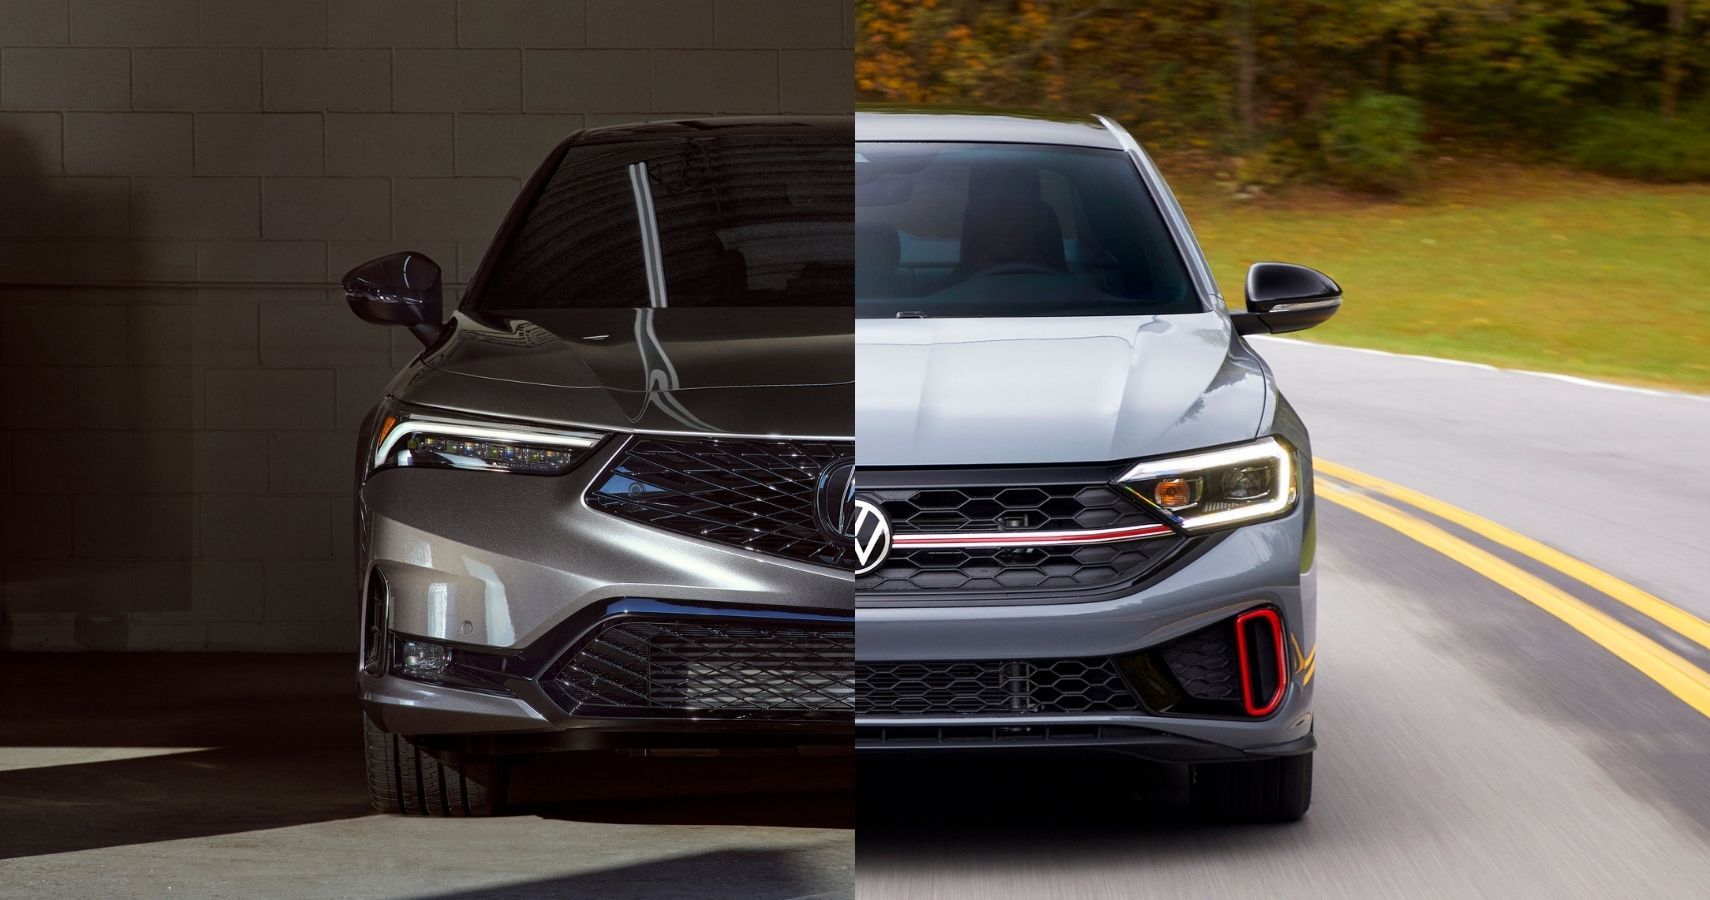 2023 Acura Integra vs Volkswagen Jetta GLI front view side-by-side comparison